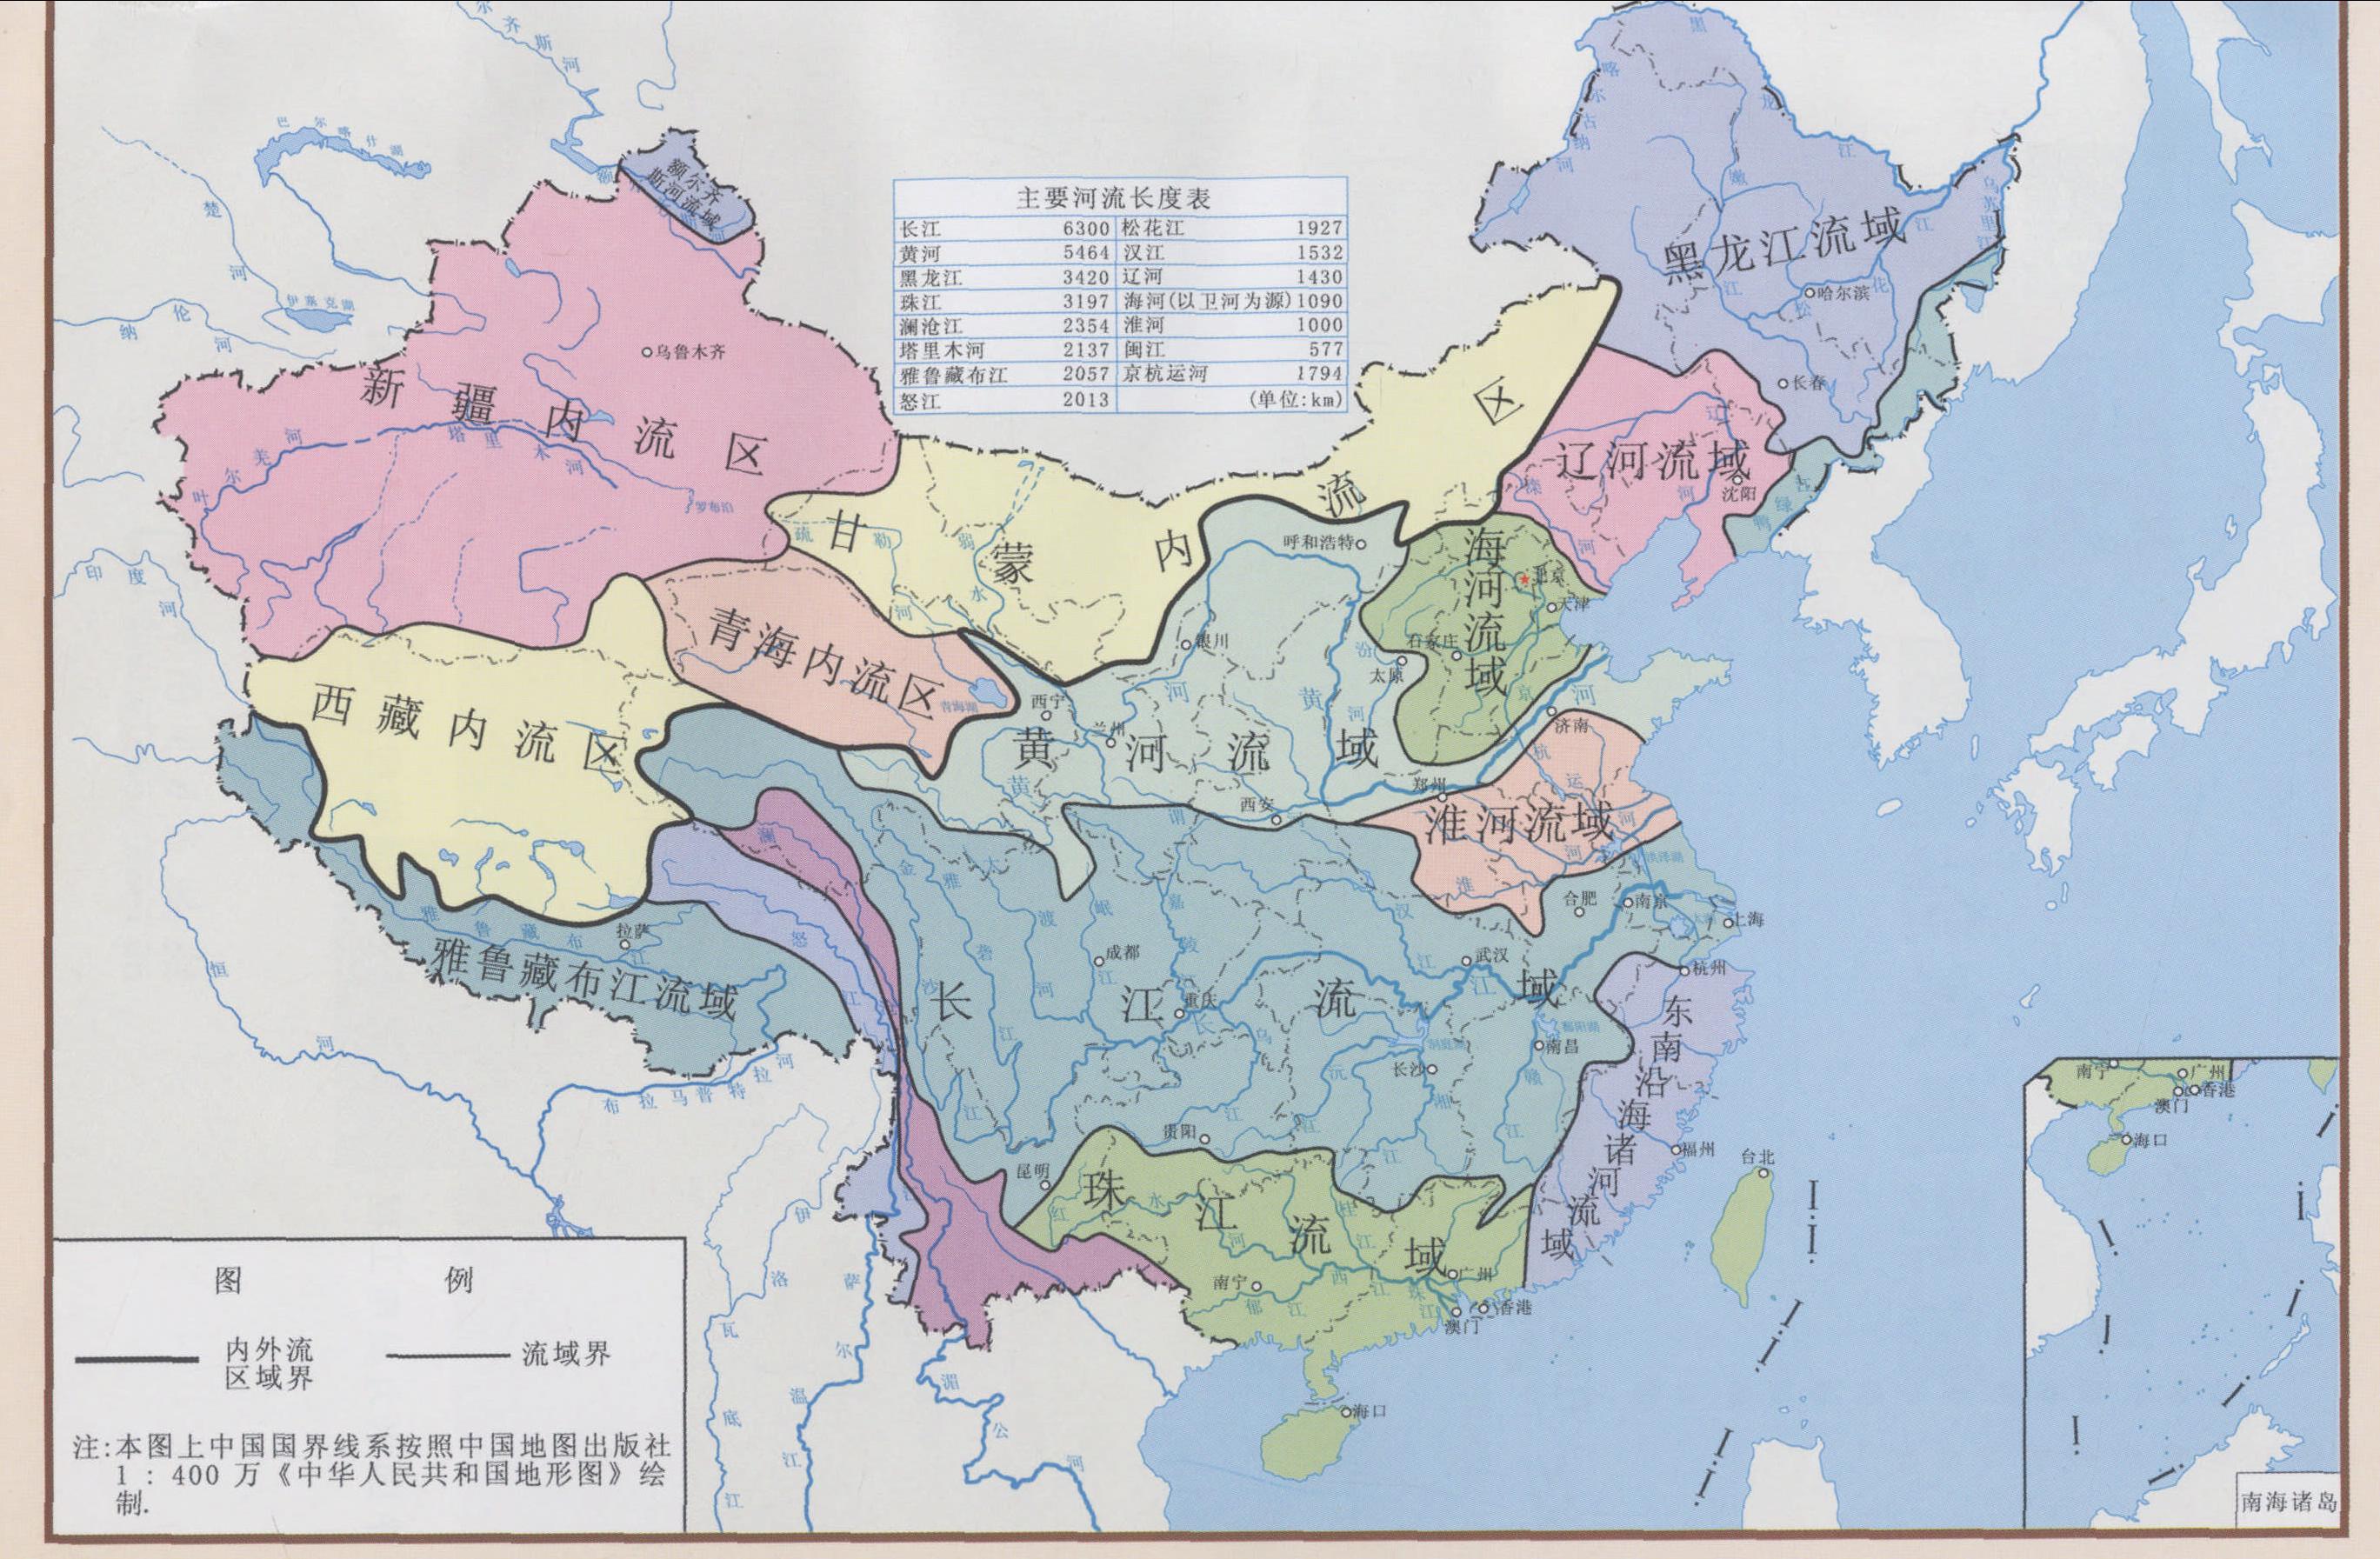 地理学 中国大河 河流名称 长度(公里 流域面积(平方公里 流量